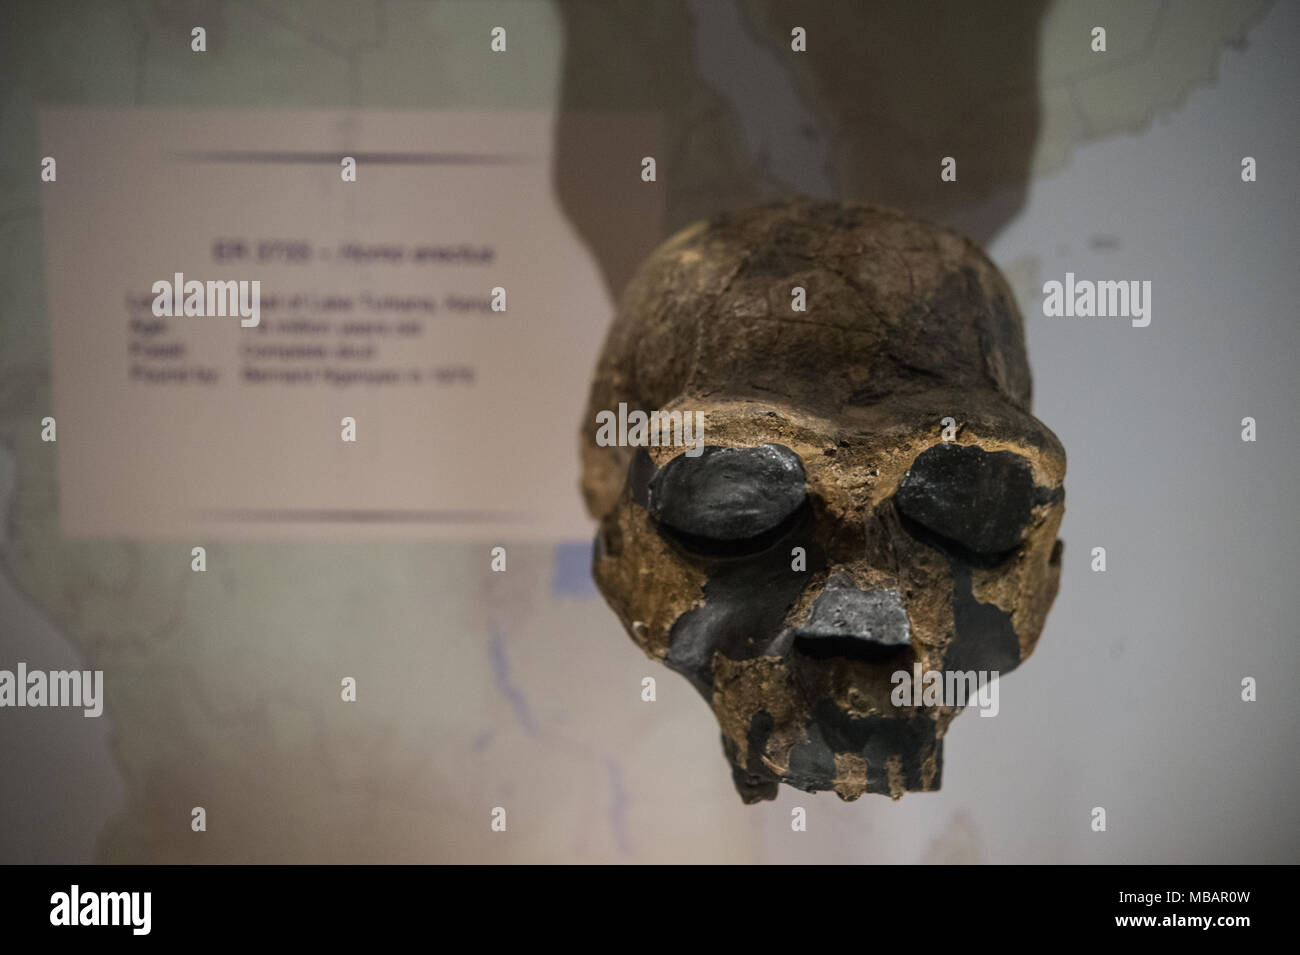 Kompletter Schädel von Hominiden, Homo erectus, östlich von Lake Turkana, Kenia, Afrika. 1,8 Millionen Jahre alt. Nairobi National Museum, Nairobi, Kenia, Afrika Stockfoto